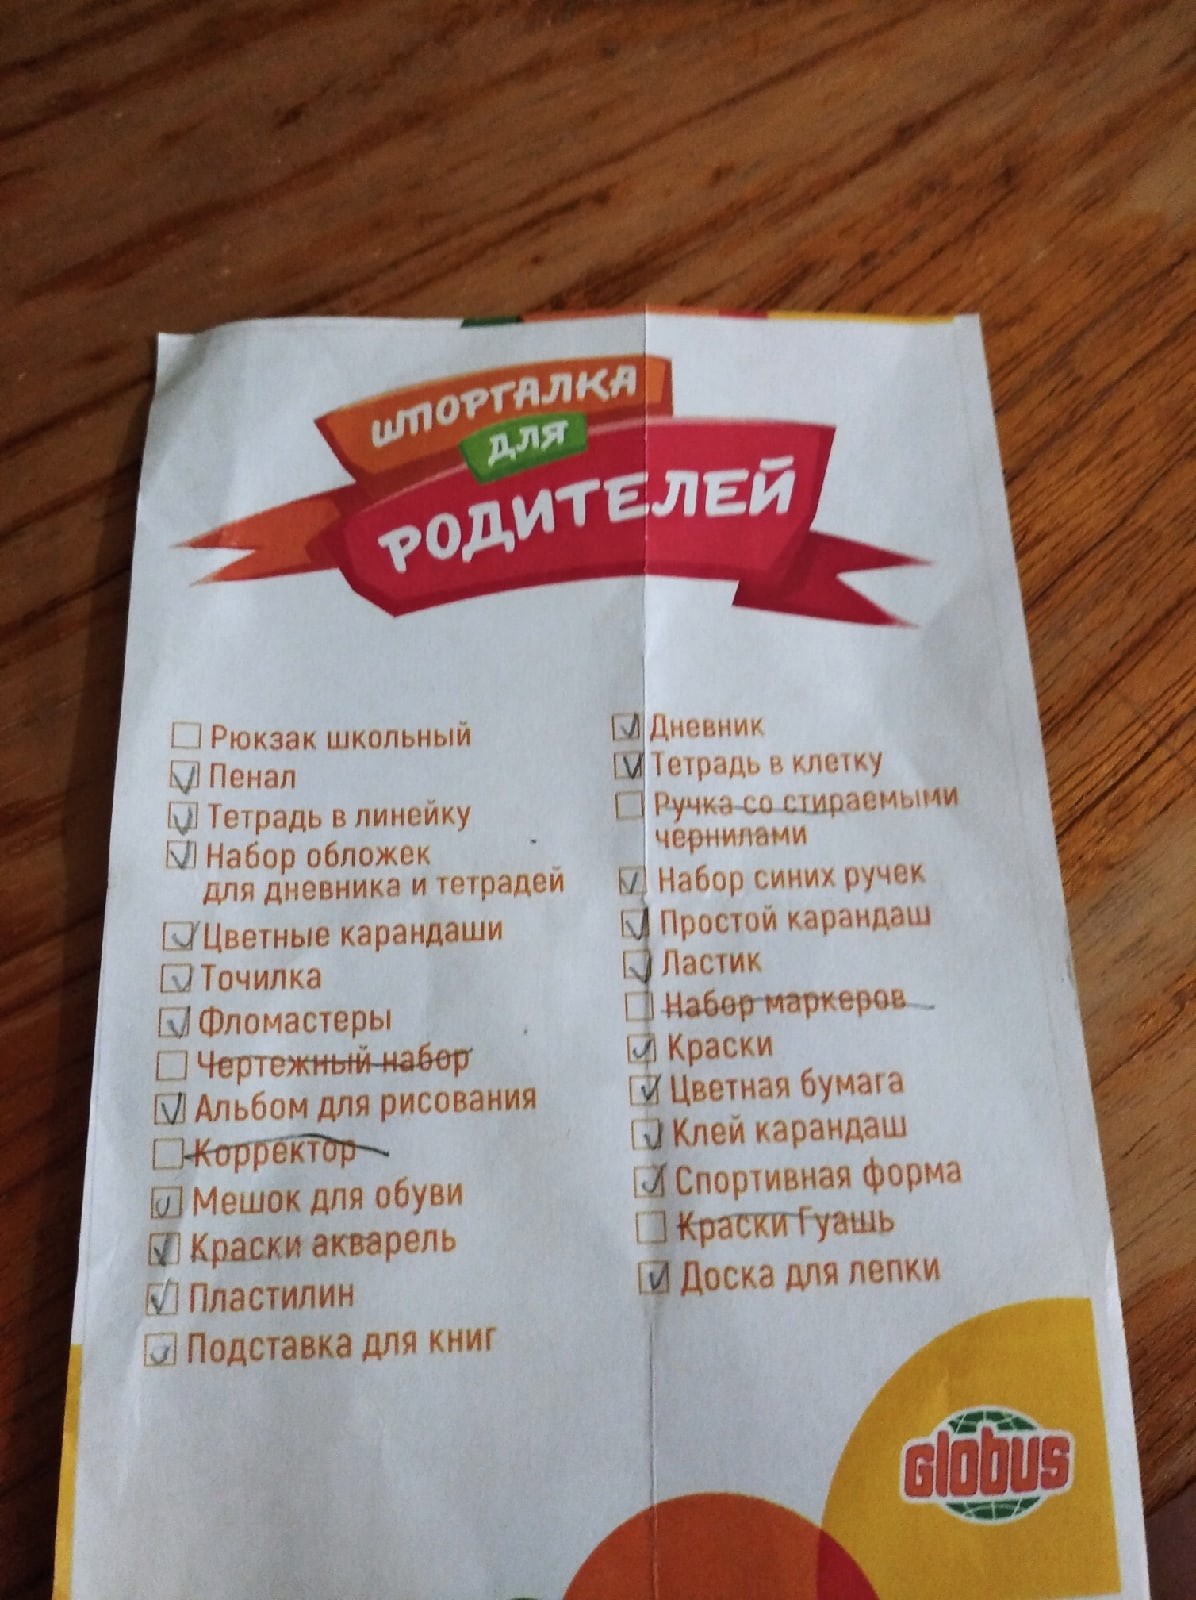 А для родителей учебник русского языка купили?